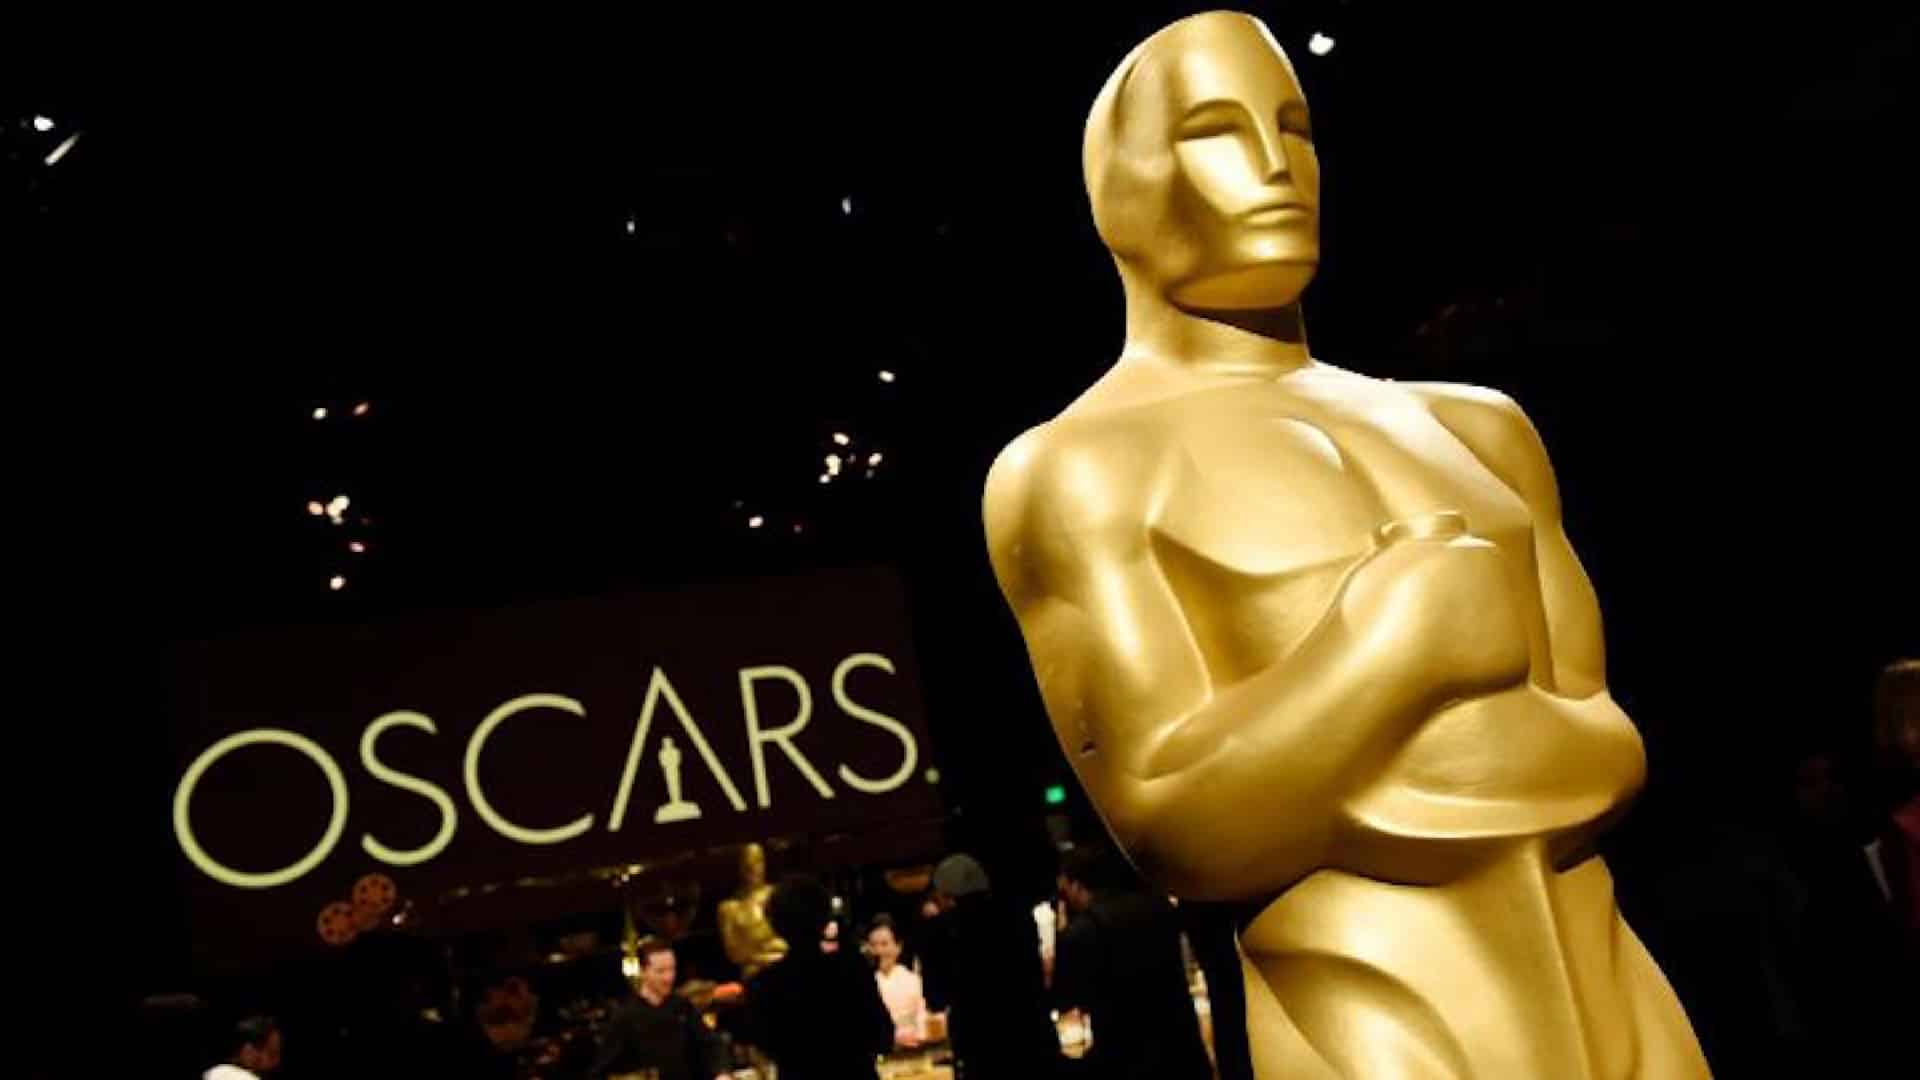 Quella volta che un uomo nudo irruppe sul palco degli Oscar: la tragica e sorprendente verità dietro l’imbarazzante evento